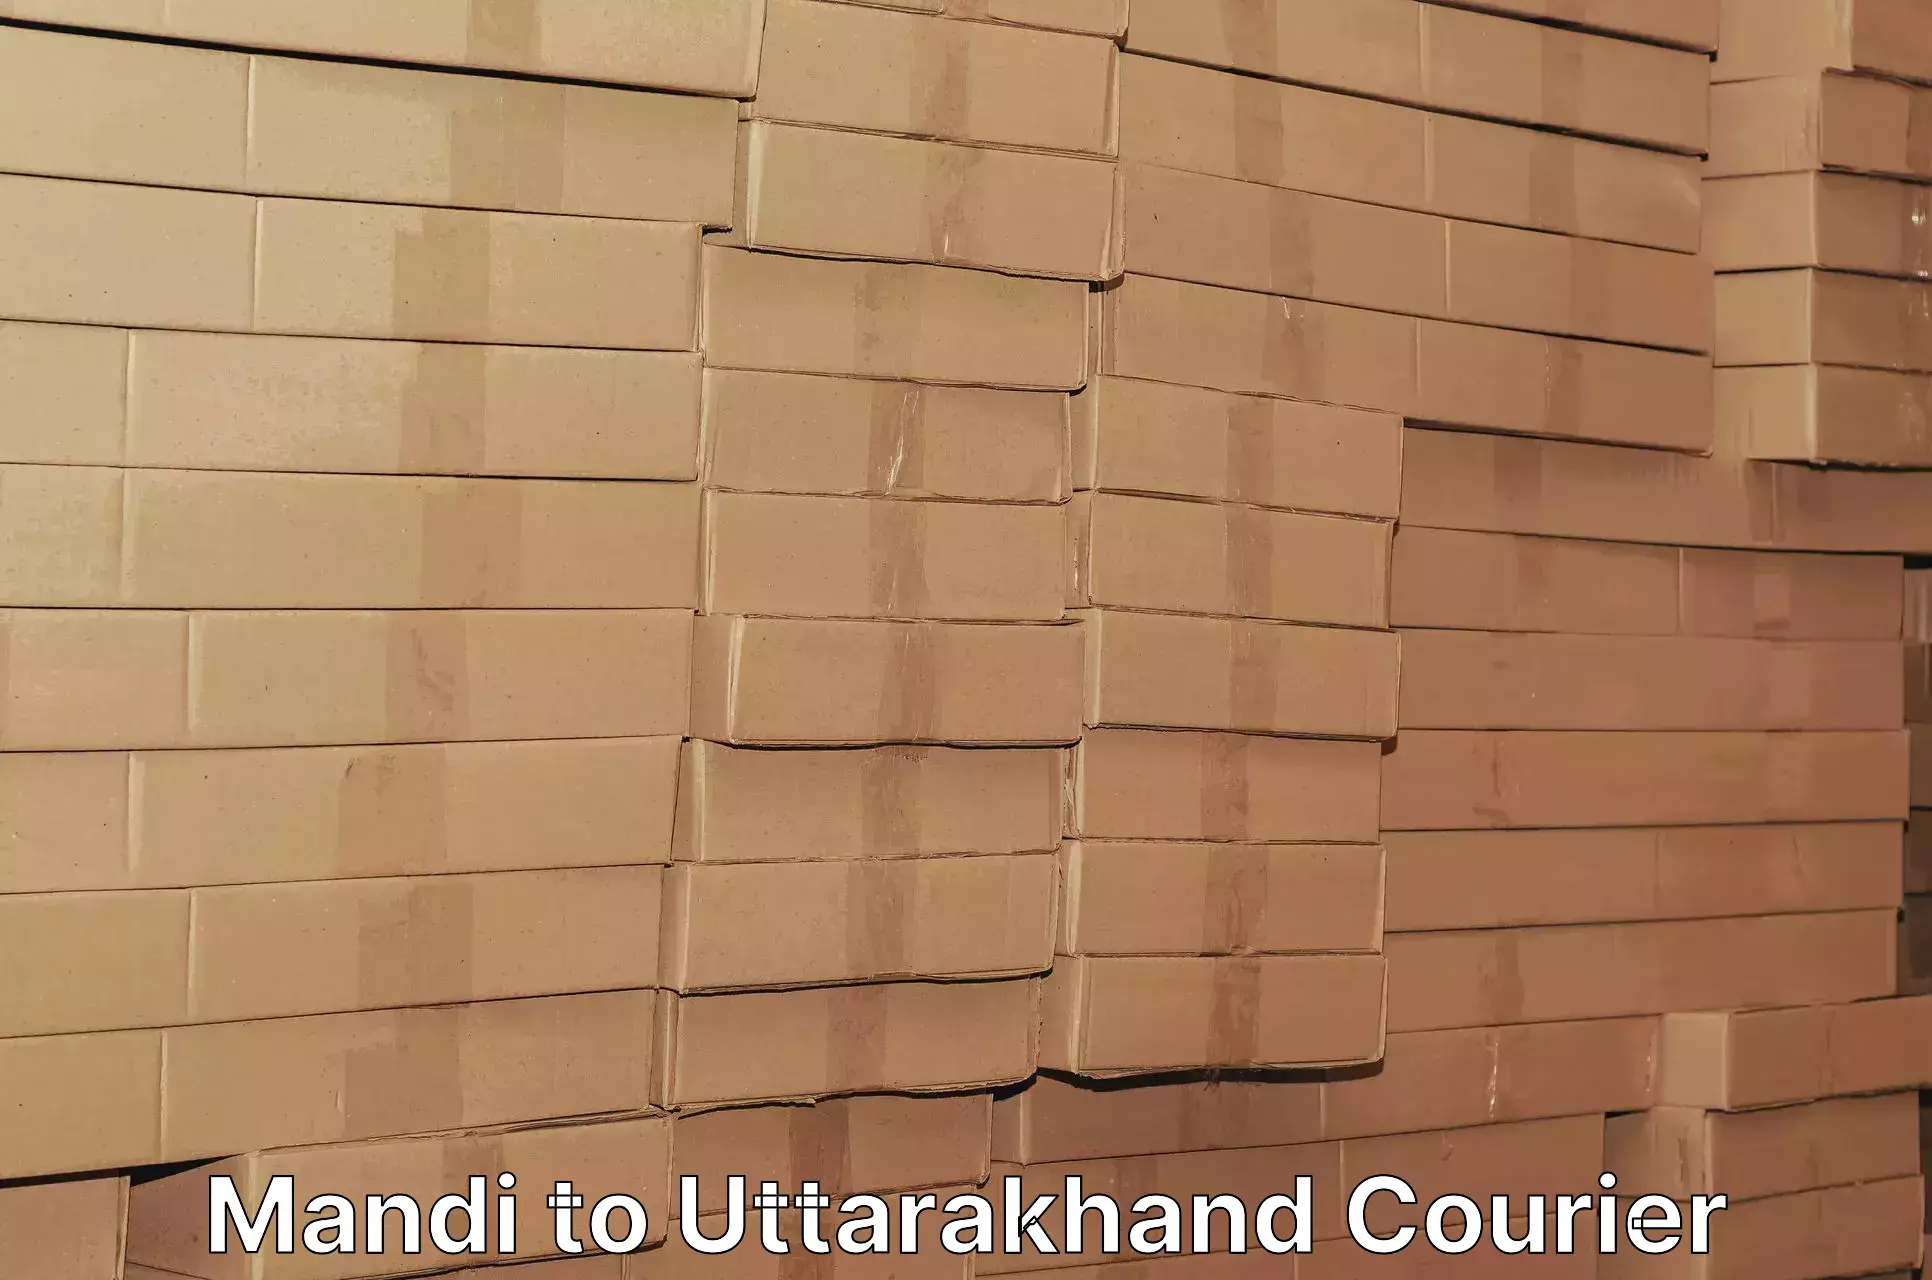 Automated parcel services Mandi to Uttarakhand